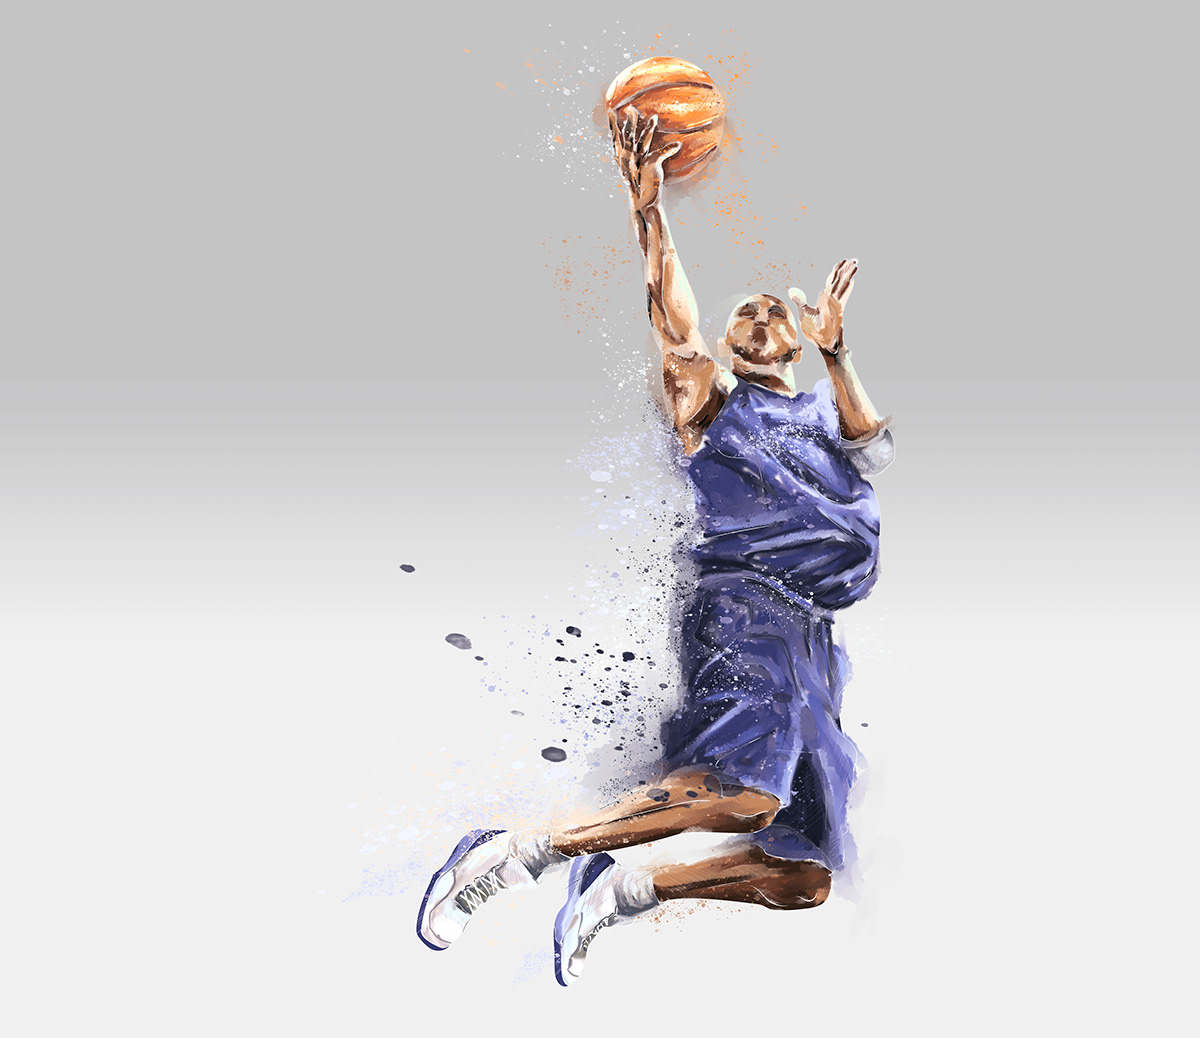 basketball player fiolet ball NBA sneakers dezign jump bar17